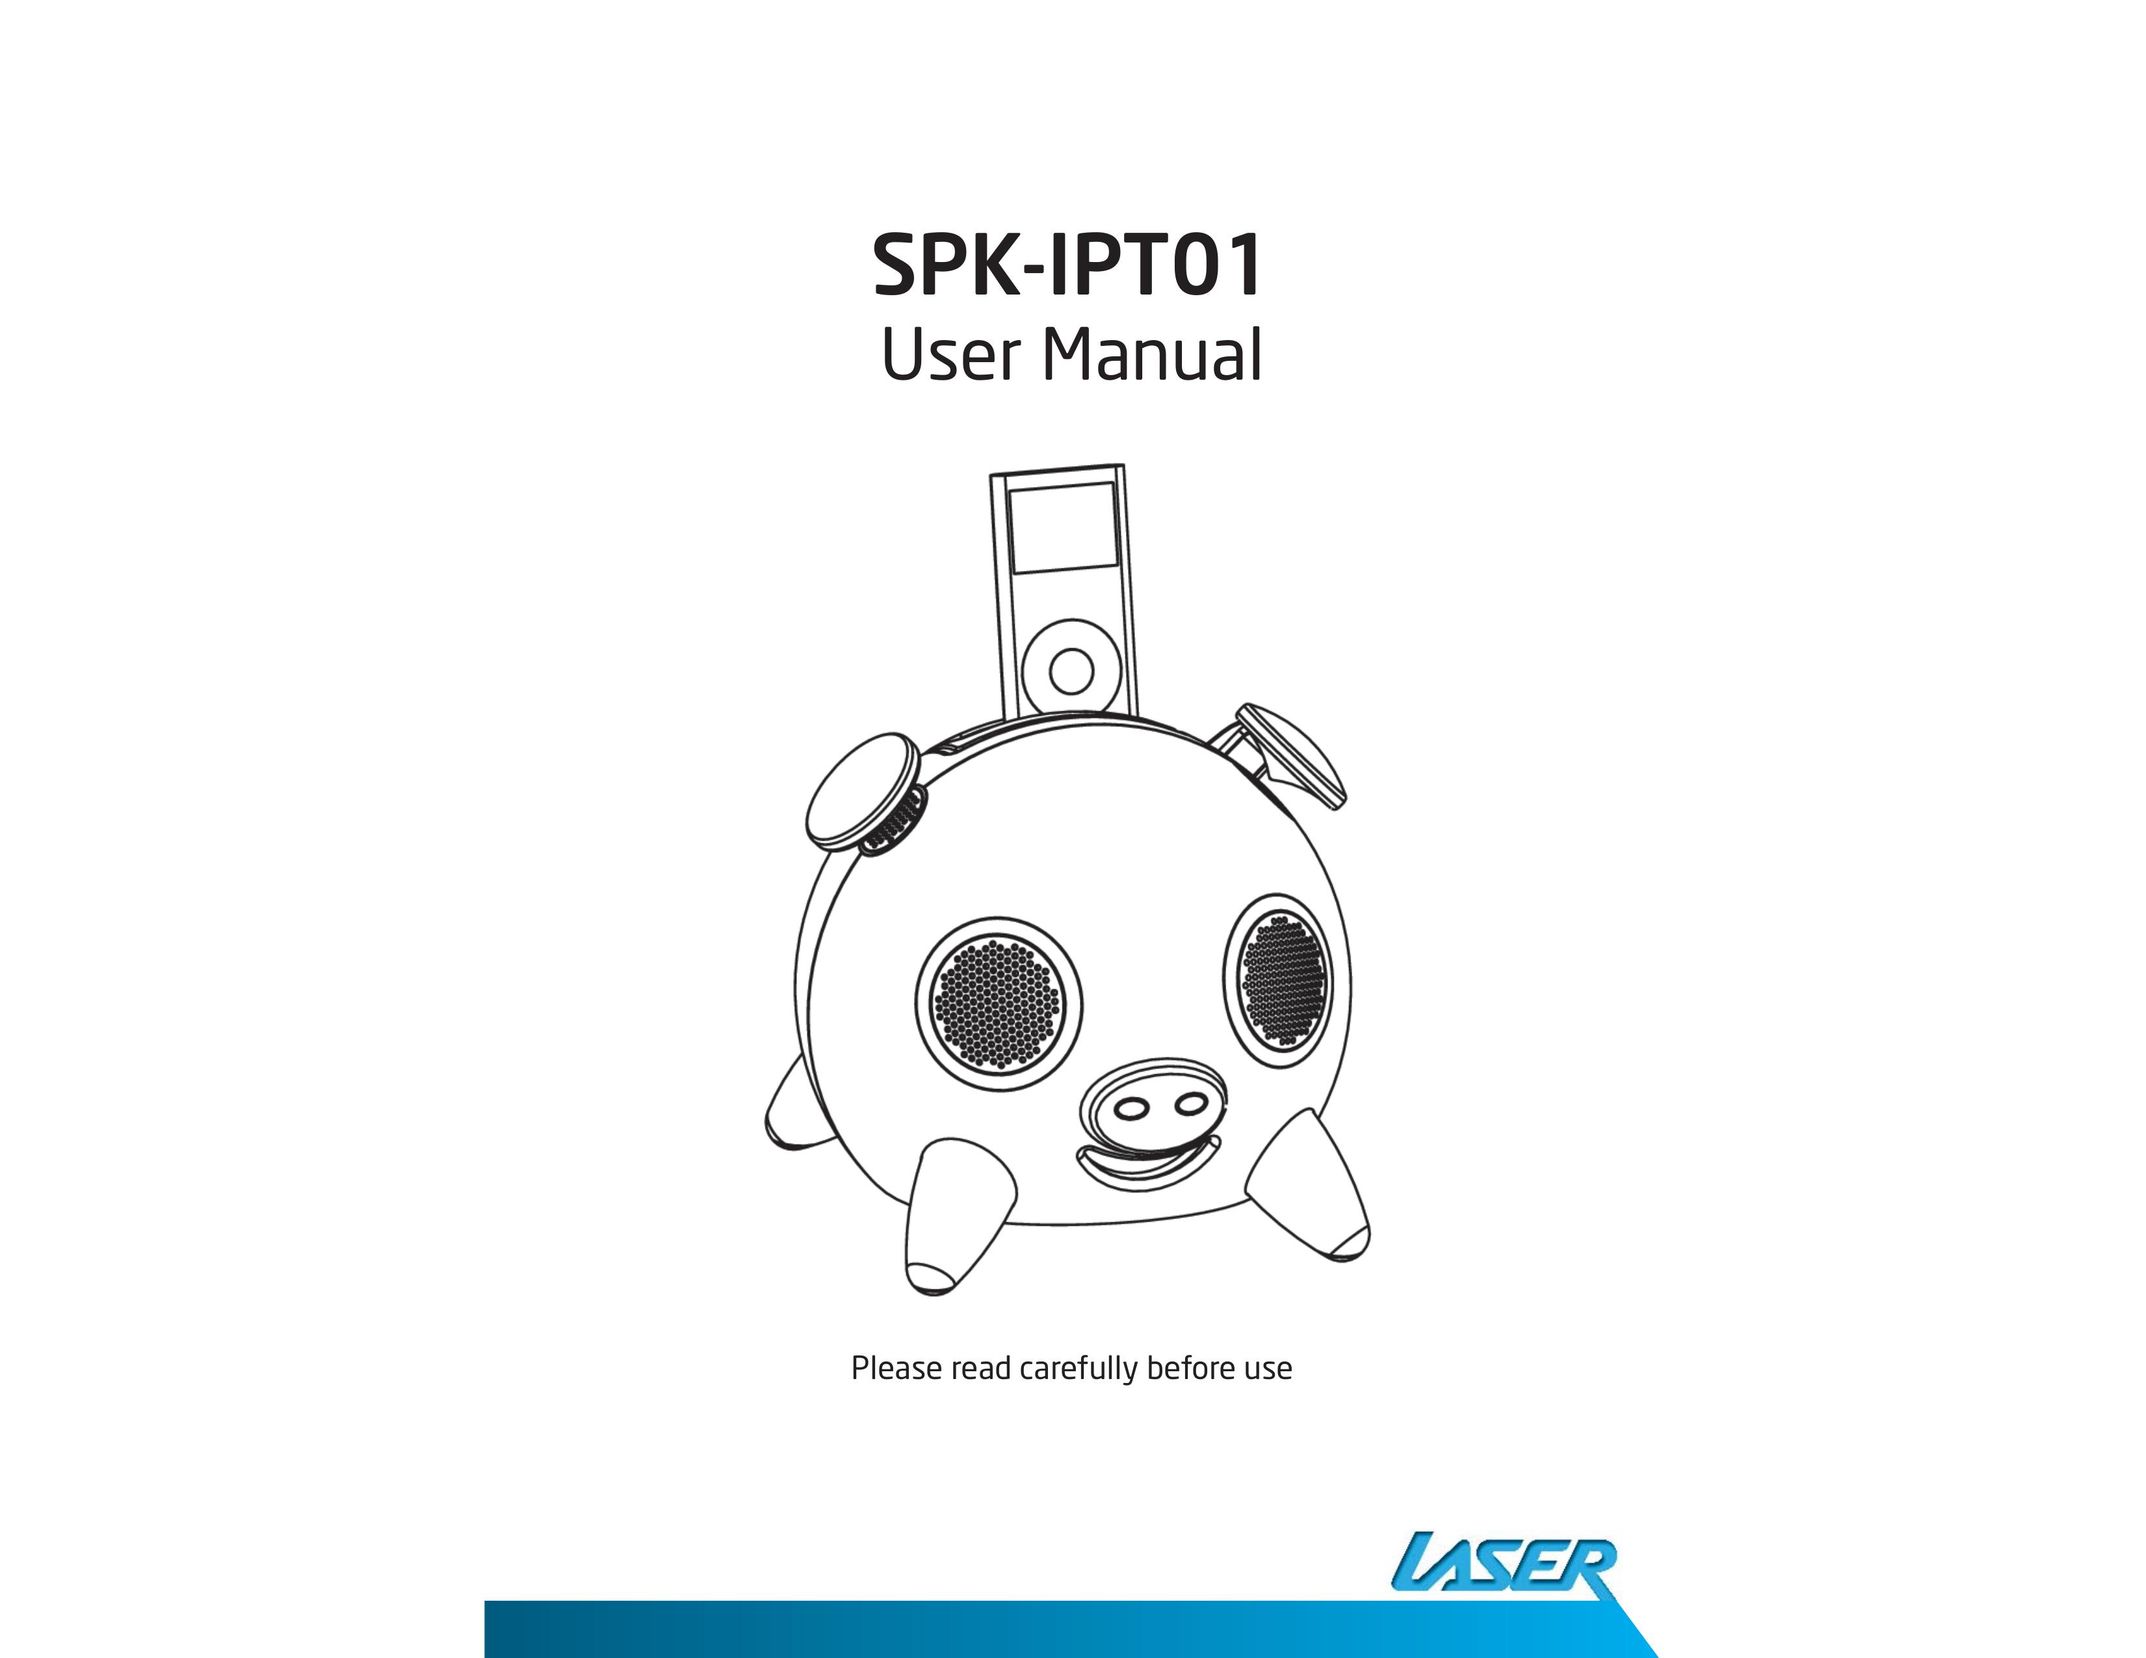 Laser SPK-IPT01 MP3 Docking Station User Manual (Page 1)